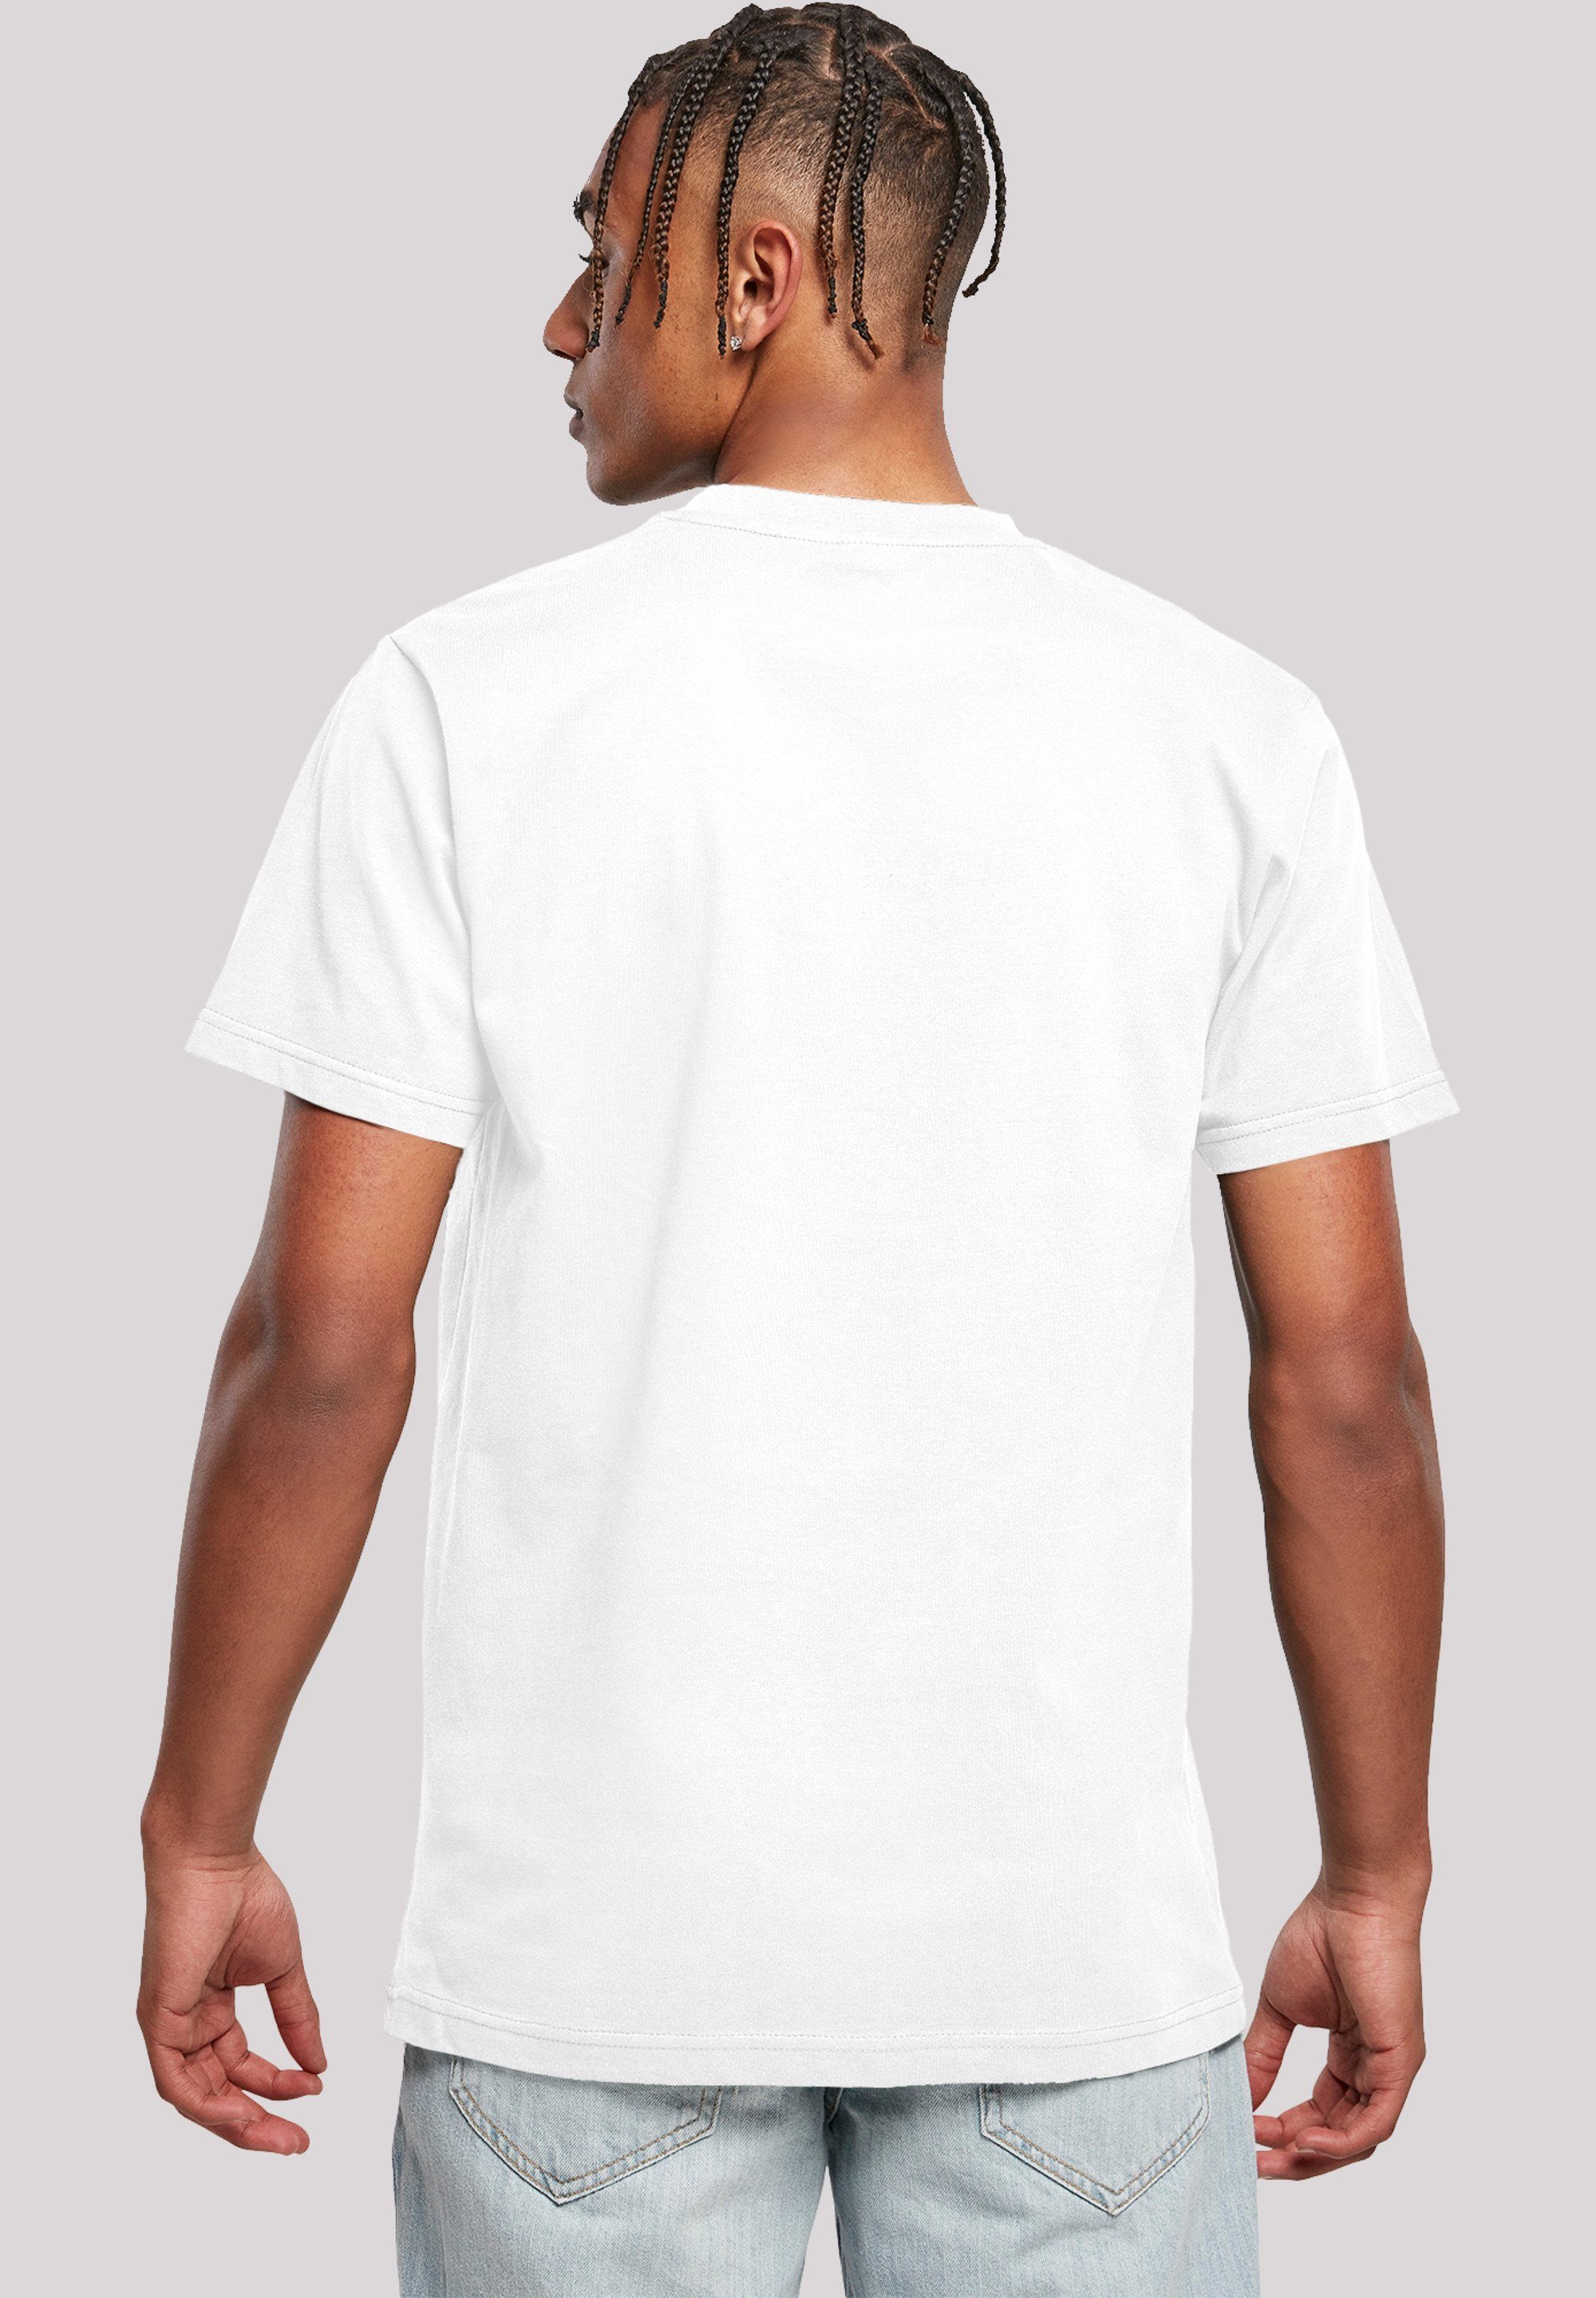 Herren,Premium Merch,Regular-Fit,Basic,Bedruckt F4NT4STIC Rick - weiß Morty Rick Cool T-Shirt and